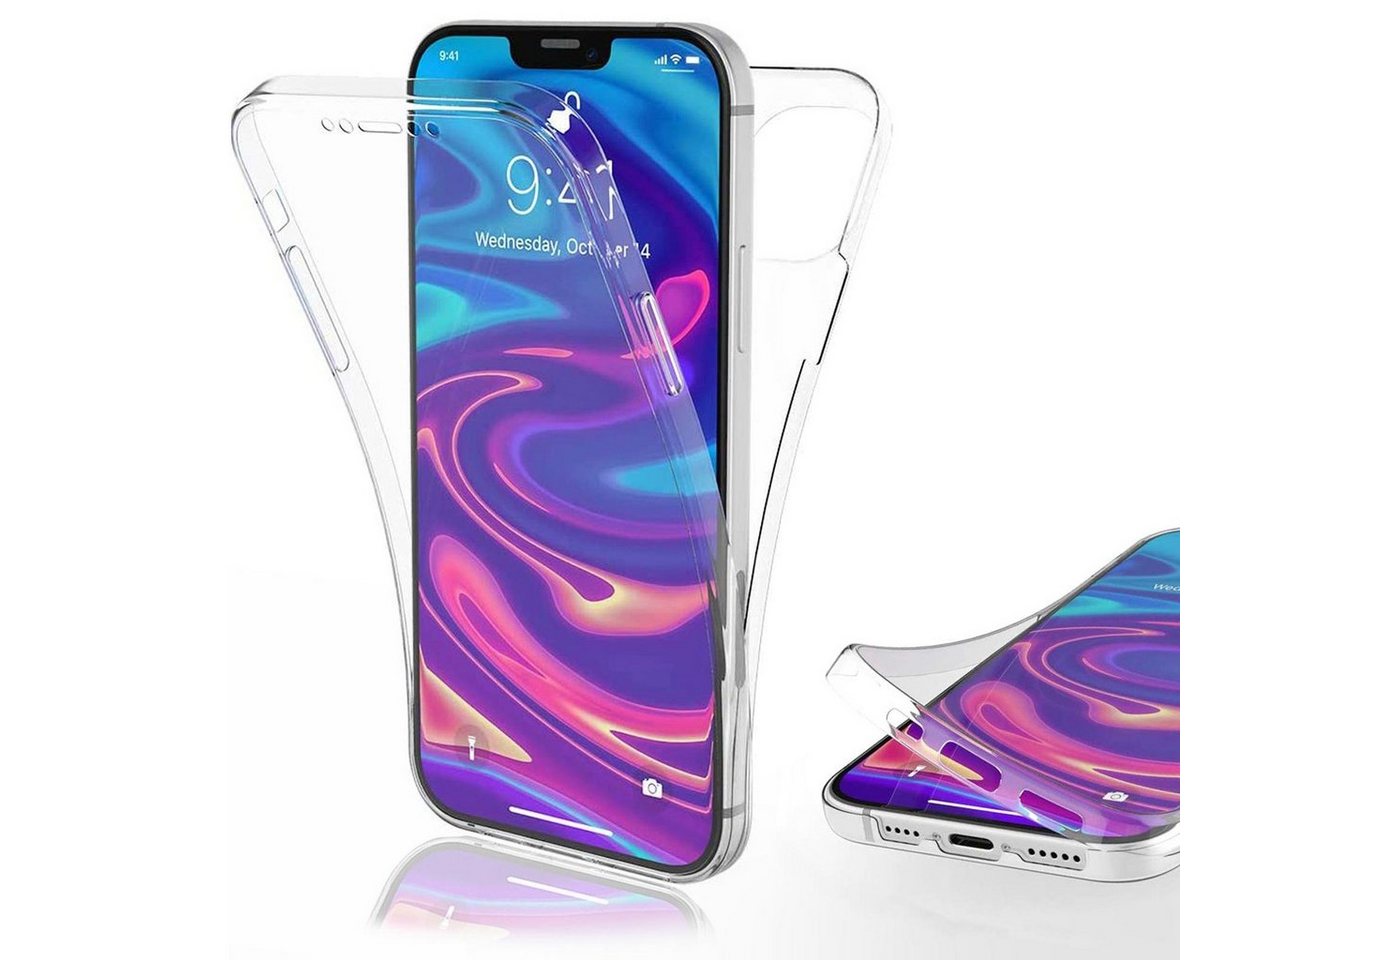 Numerva Handyhülle Full TPU für Apple iPhone 6 / 6s, 360° Handy Schutz Hülle Silikon Case Cover Bumper von Numerva